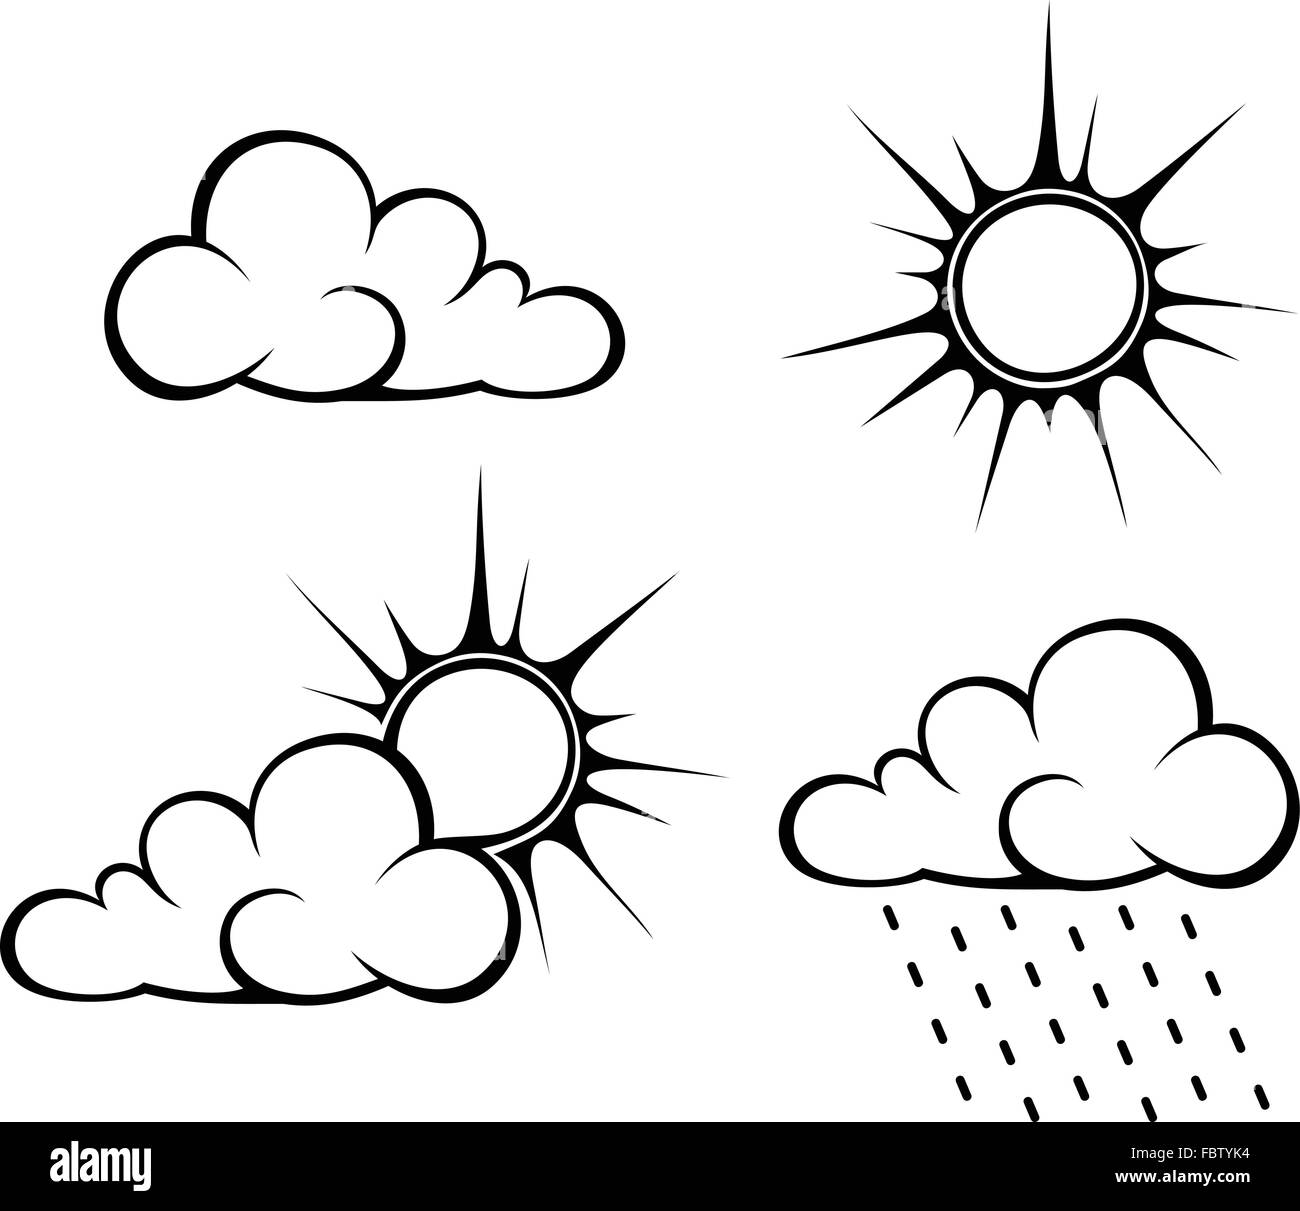 Schwarze Konturen von Wolken und Sonne. Vektor-Illustration. Stock Vektor